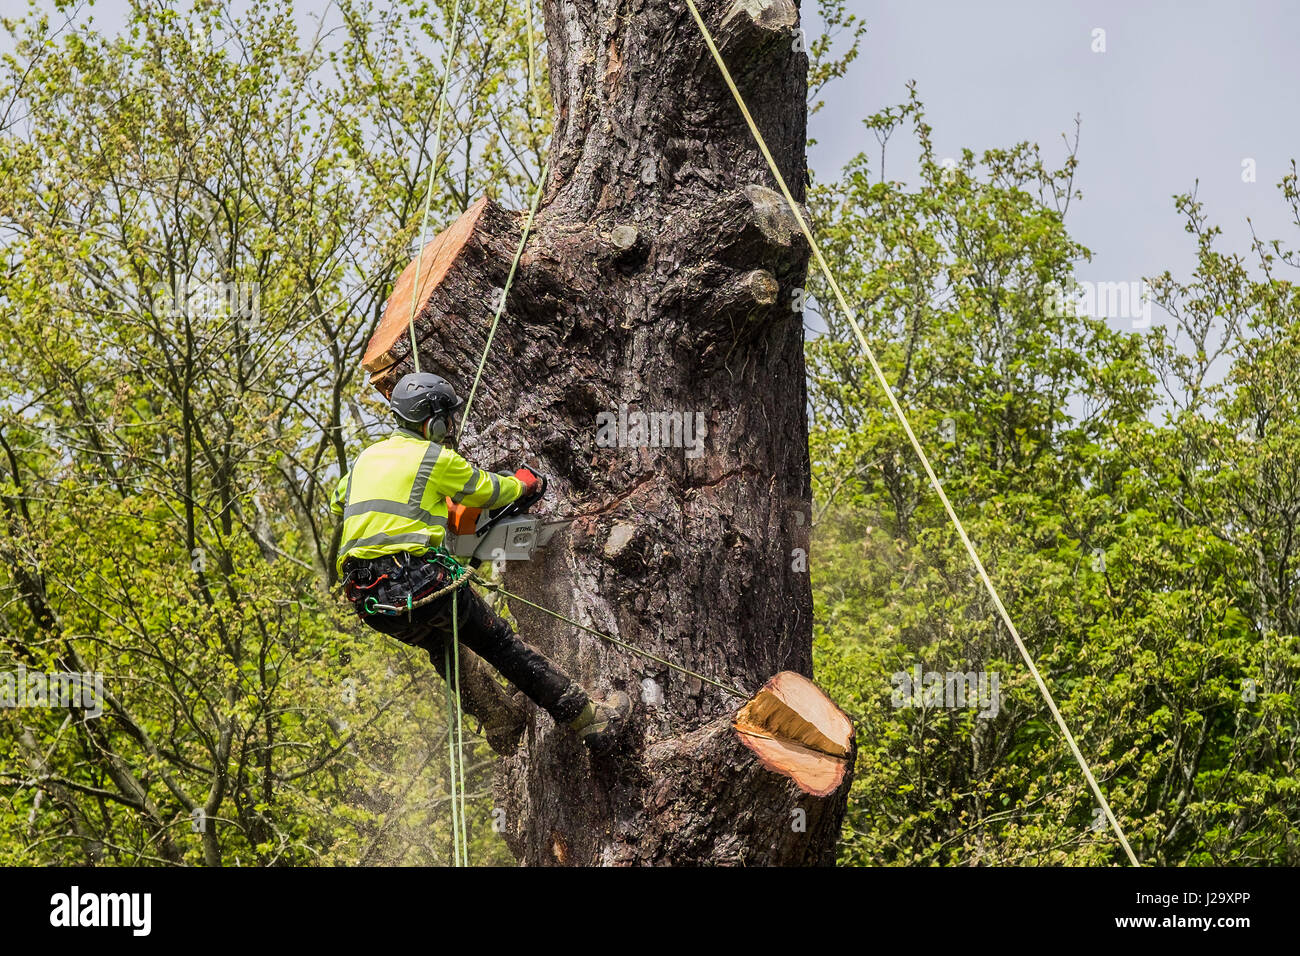 Tree Surgeon réduisant l'Arboriculture Arbre arboriculteur dangereux, travail en hauteur à l'aide d'un travailleur qualifié de scie à chaîne Banque D'Images